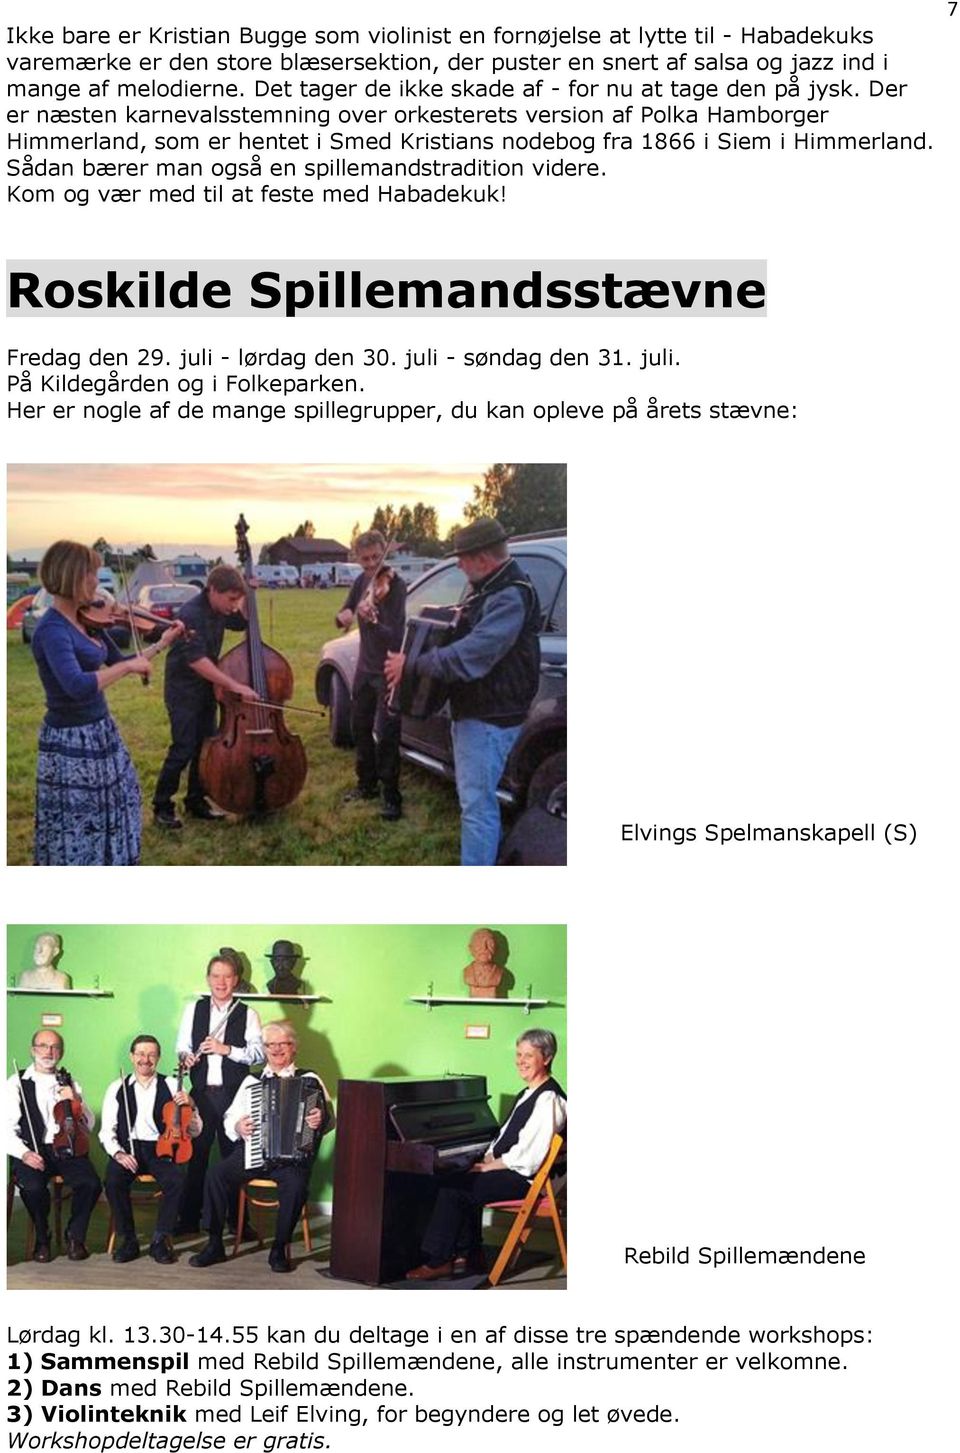 Der er næsten karnevalsstemning over orkesterets version af Polka Hamborger Himmerland, som er hentet i Smed Kristians nodebog fra 1866 i Siem i Himmerland.